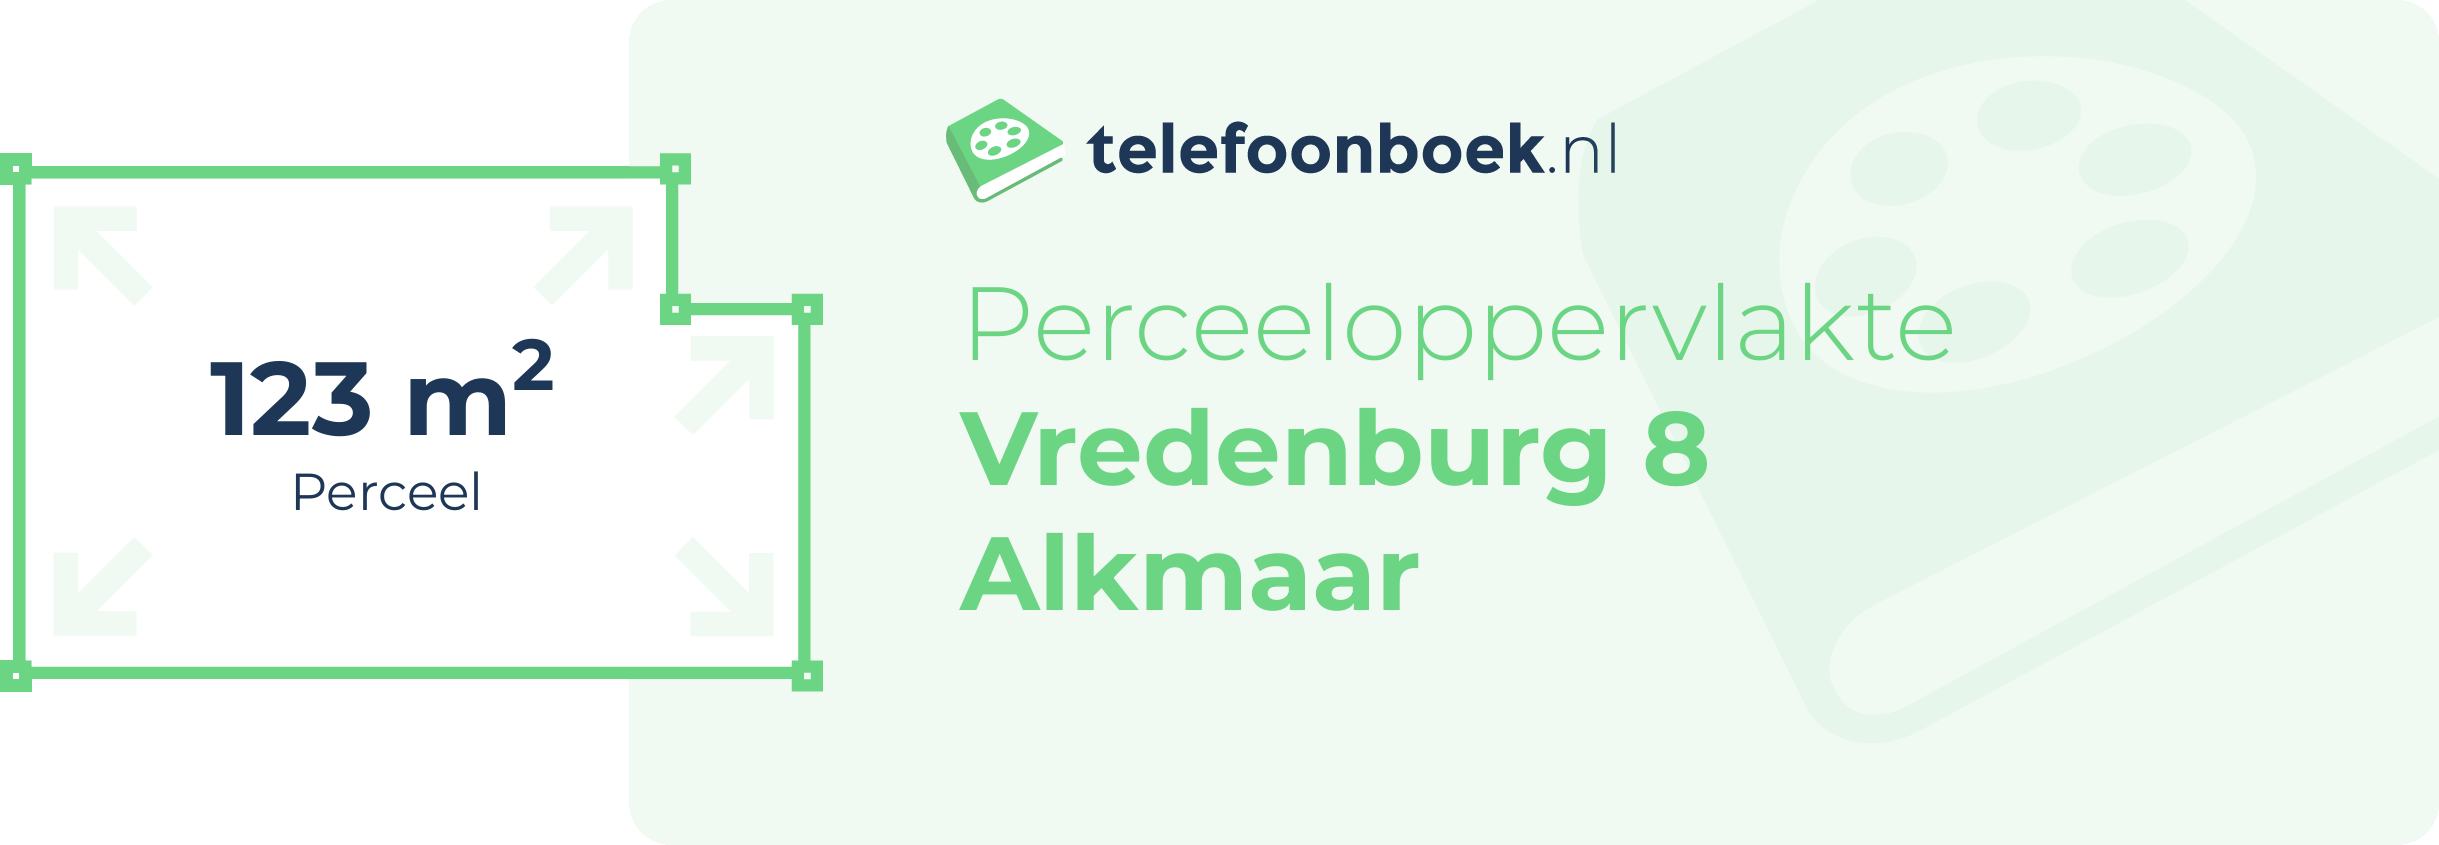 Perceeloppervlakte Vredenburg 8 Alkmaar